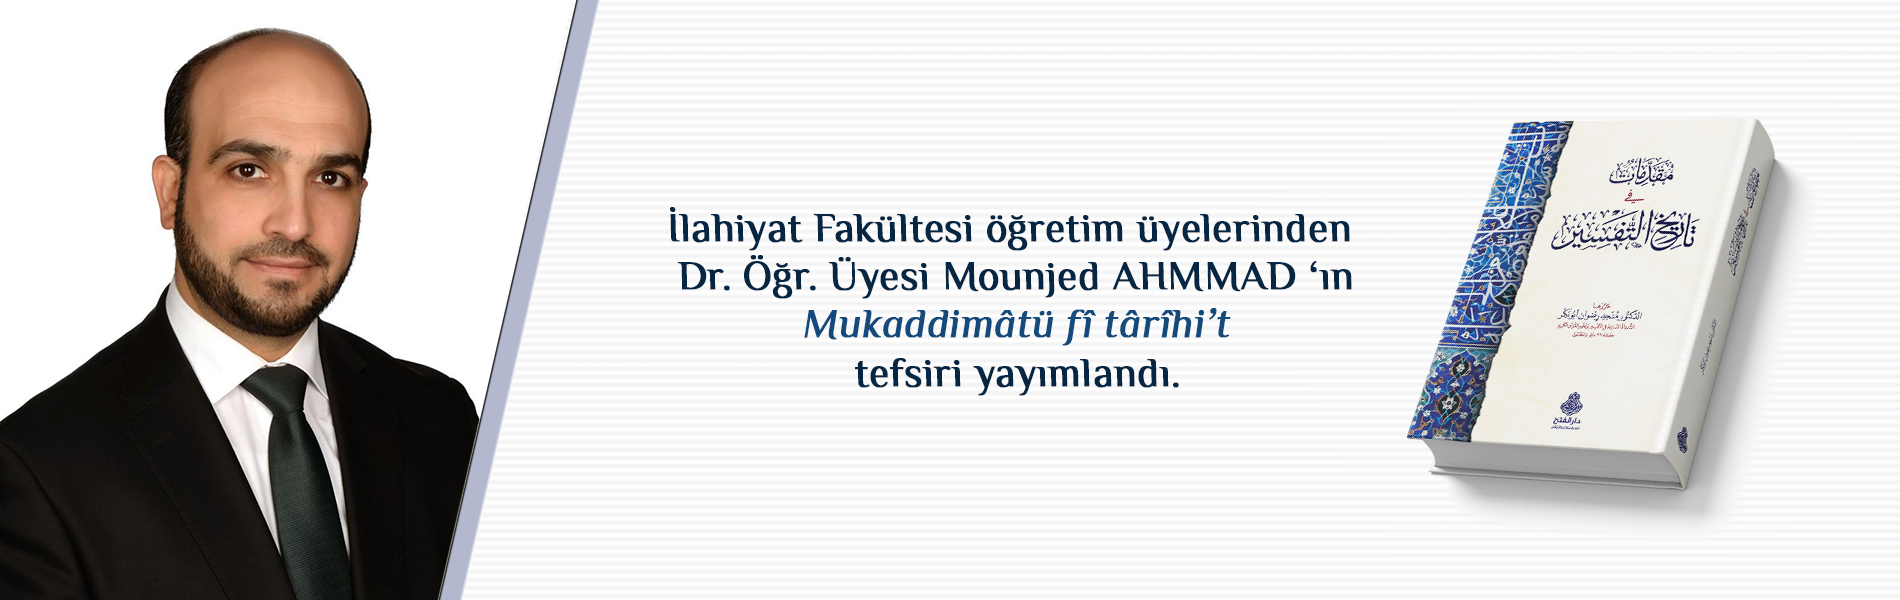 İlahiyat Fakültesi Öğretim Üyelerinden Dr. Öğr. Üyesi Mounjed AHMMAD ‘ın Mukaddimâtü Fî Târîhi’t Tefsir Adlı Eseri Yayımlandı